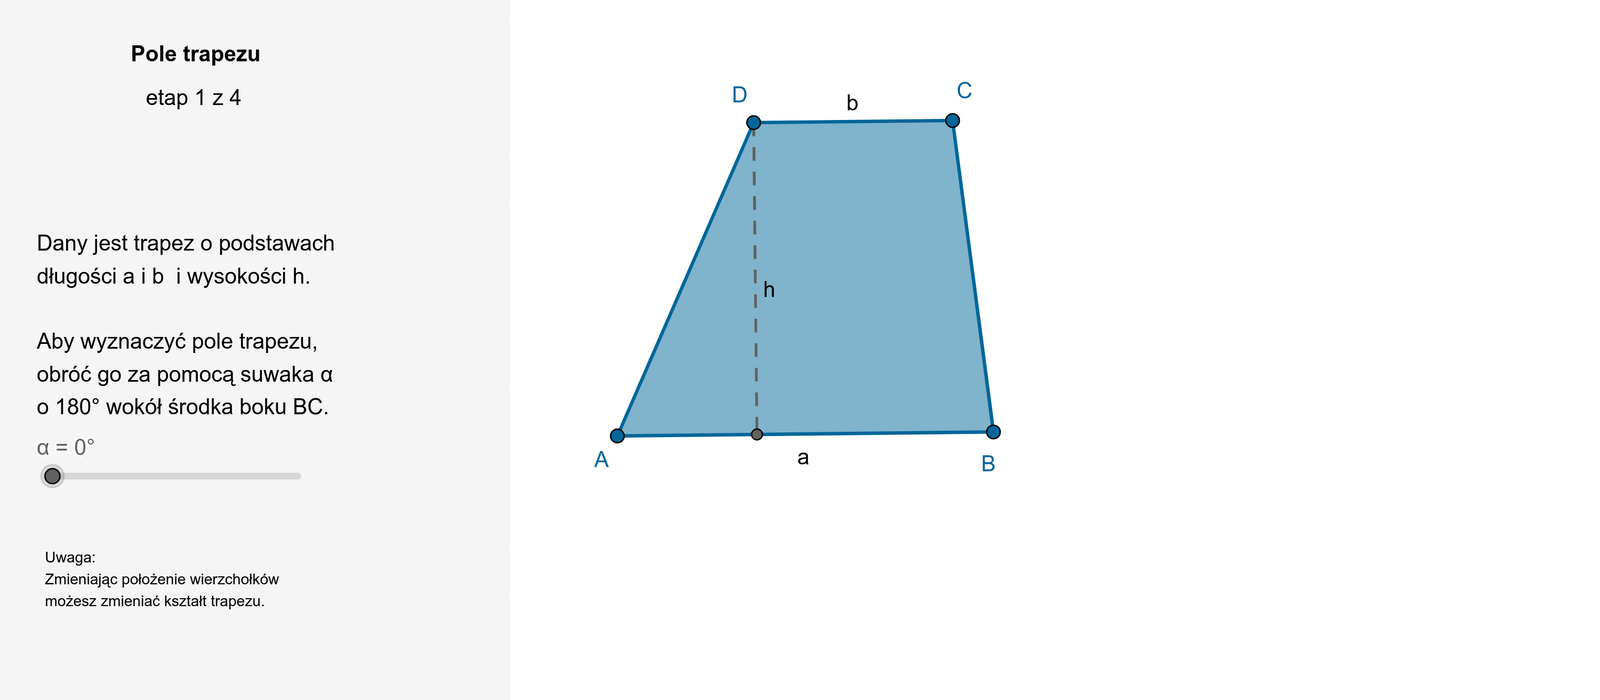 Animacja pokazuje przekształcenie trapezu A B C D o podstawach długości a i b oraz wysokości h w równoległobok A D prim A prim D o bokach długości a +b i wysokości h. Pole trapezu to połowa pola równoległoboku o boku długości a +b i wysokości h.